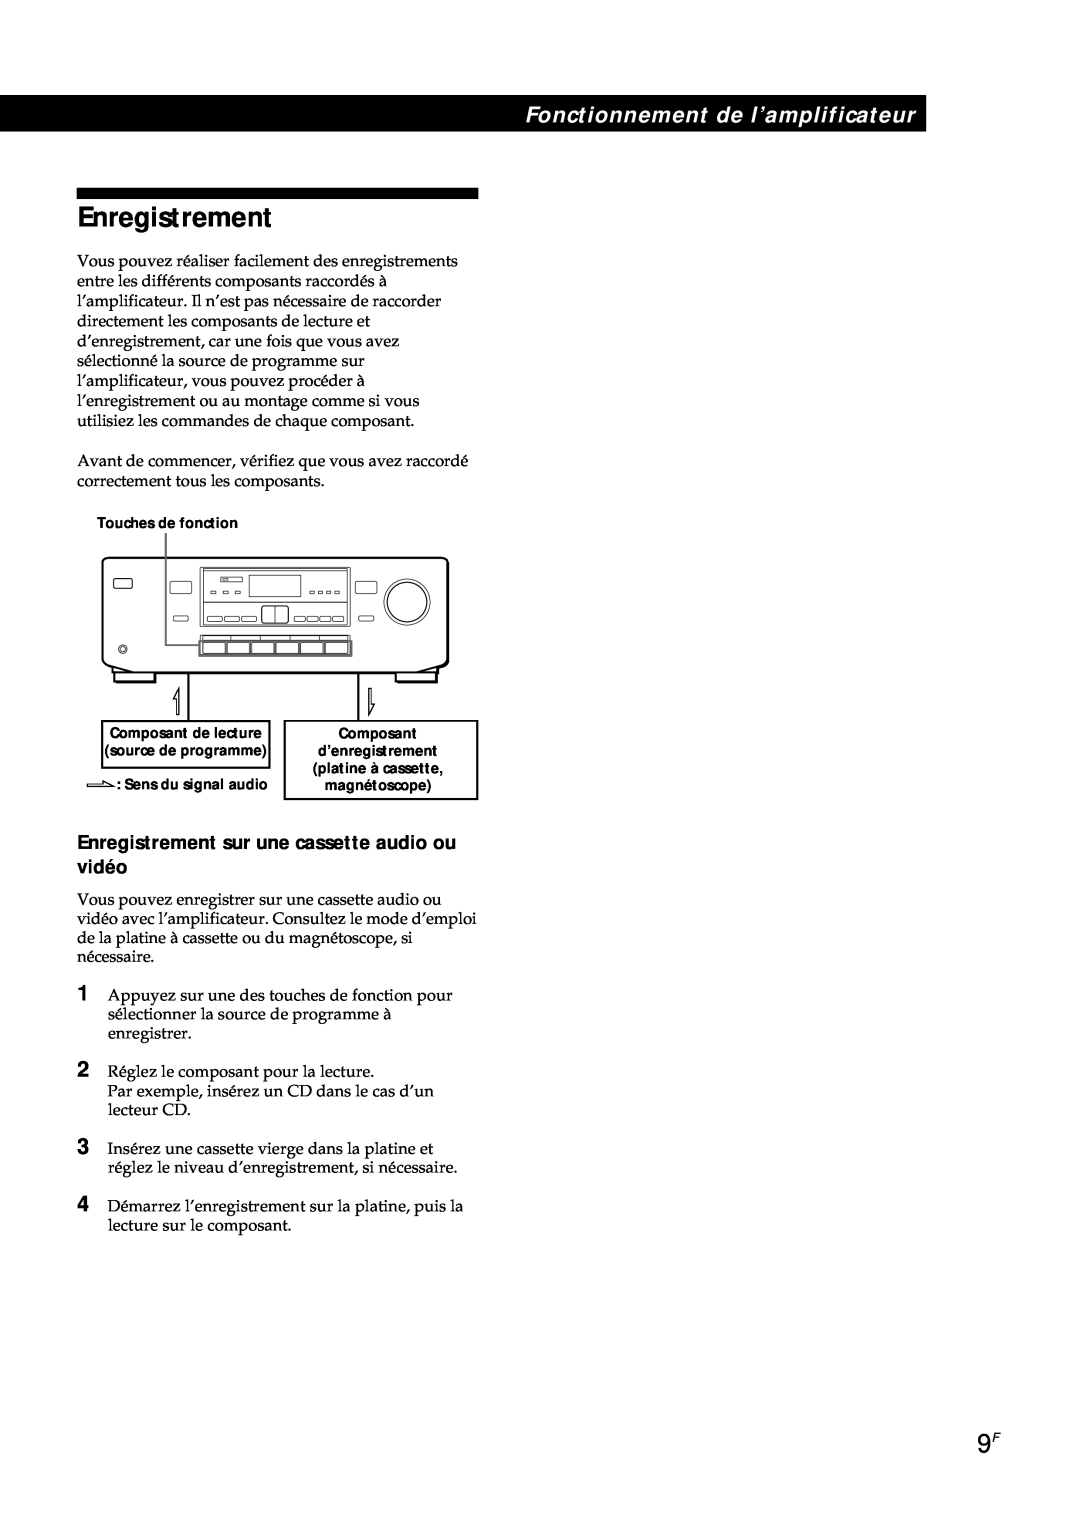 Sony TA-AV561A manual Enregistrement sur une cassette audio ou vidéo, Fonctionnement de l’amplificateur 